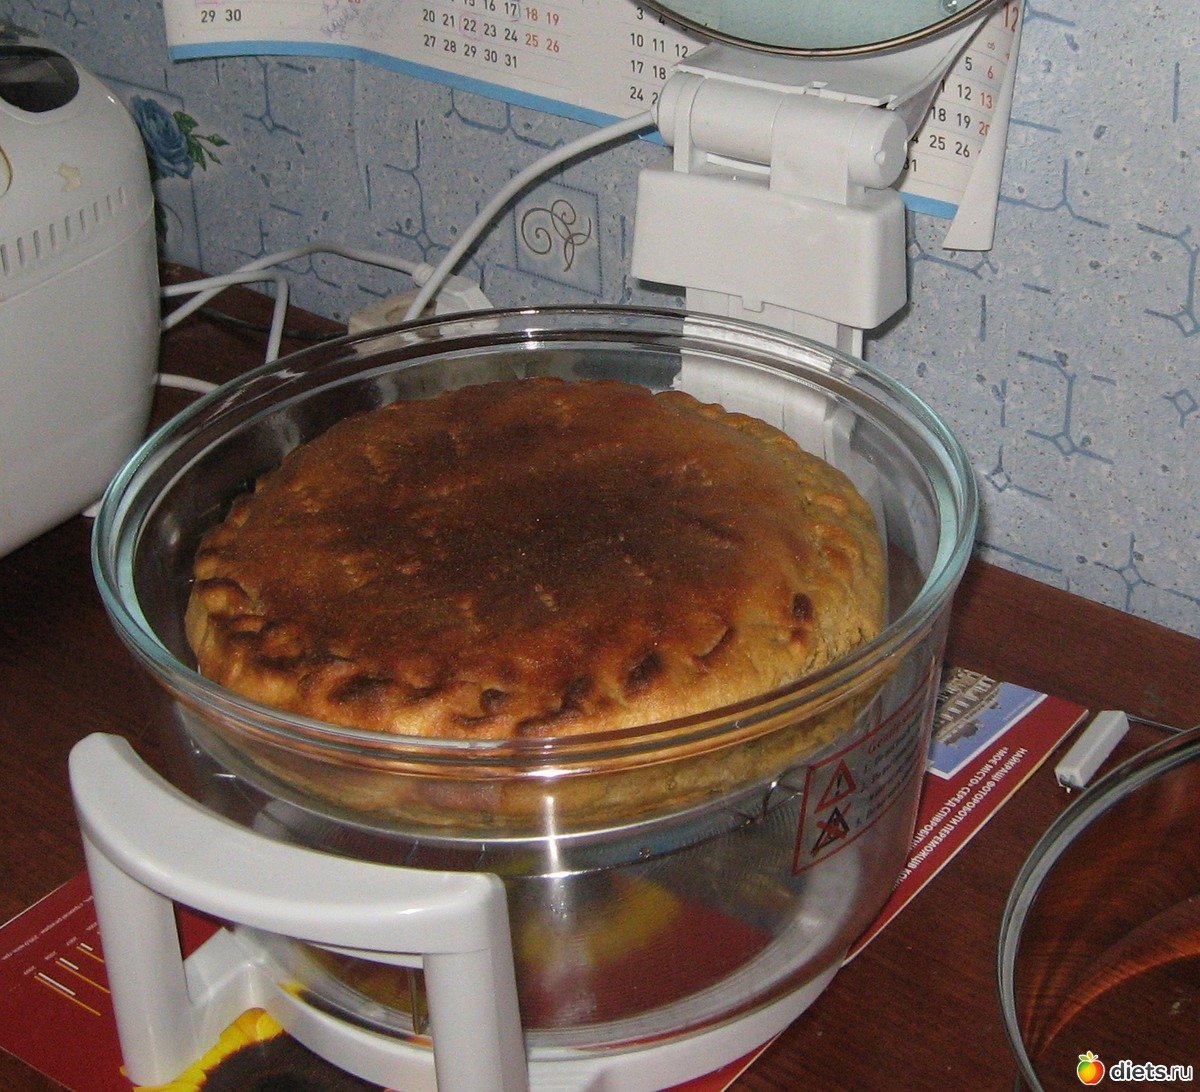 Рецепты для аэрогриля с фото простые. Выпечка в аэрогриле. Пирог в аэрогриле. Блюда из аэрогриля. Пироги в аэрогриле.